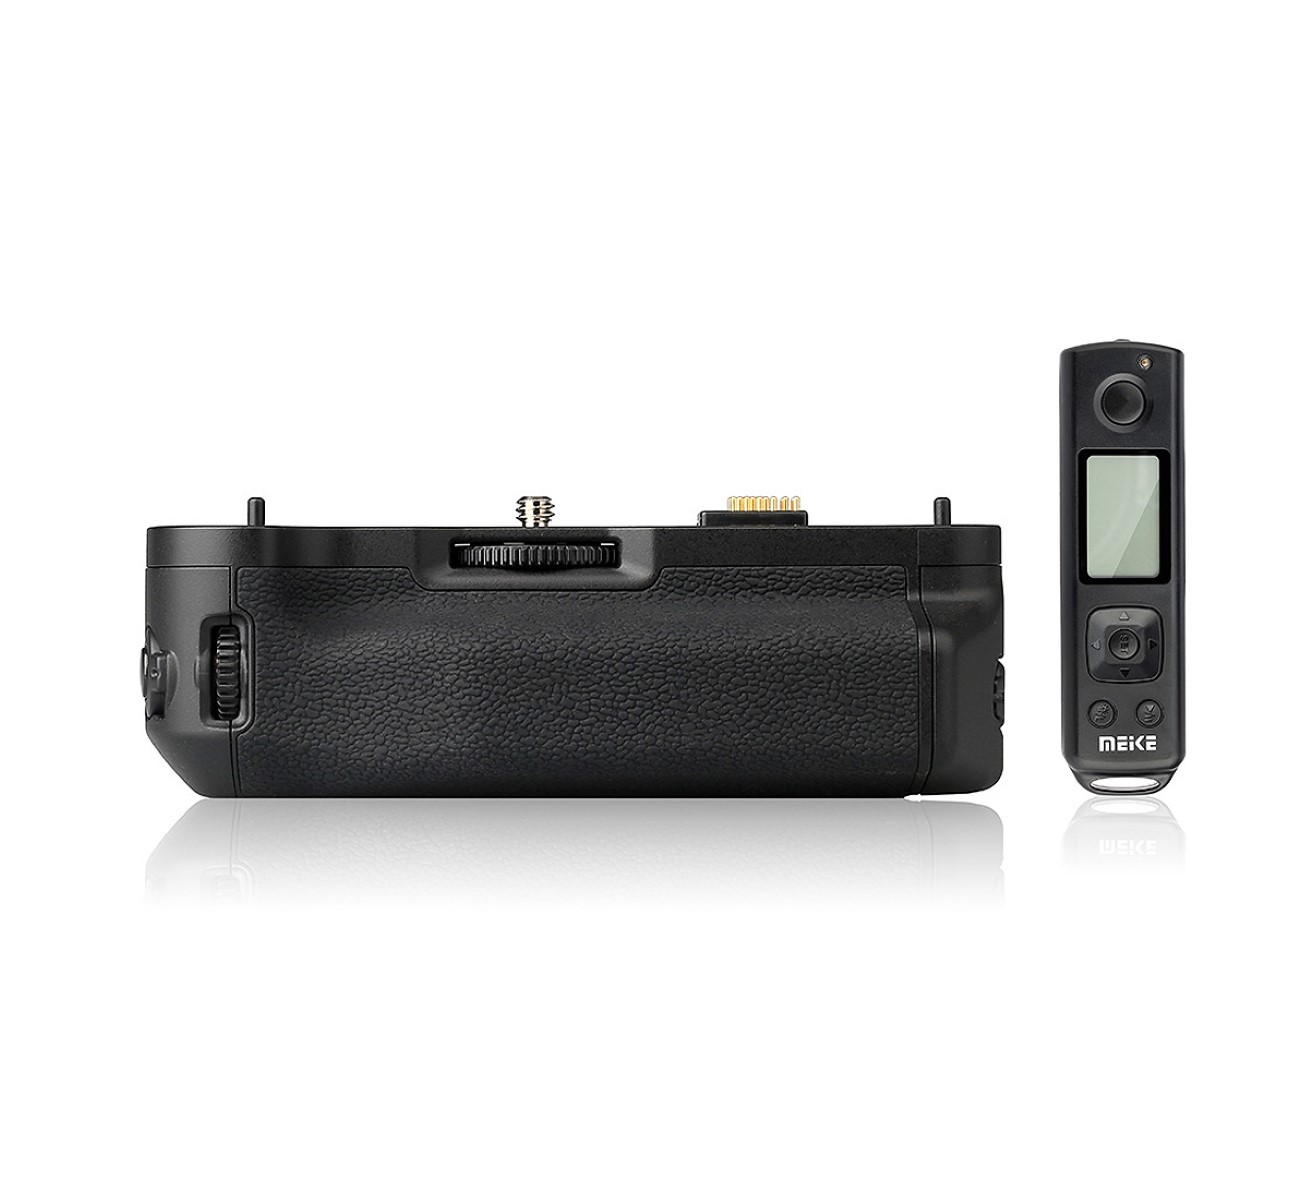 Funk-Timer-Fernauslöser, Funk-Timer-Fernauslöser Batteriegriff VG-XT1, MEIKE mit mit Fujifilm ähnlich Batteriegriff Black X-T1